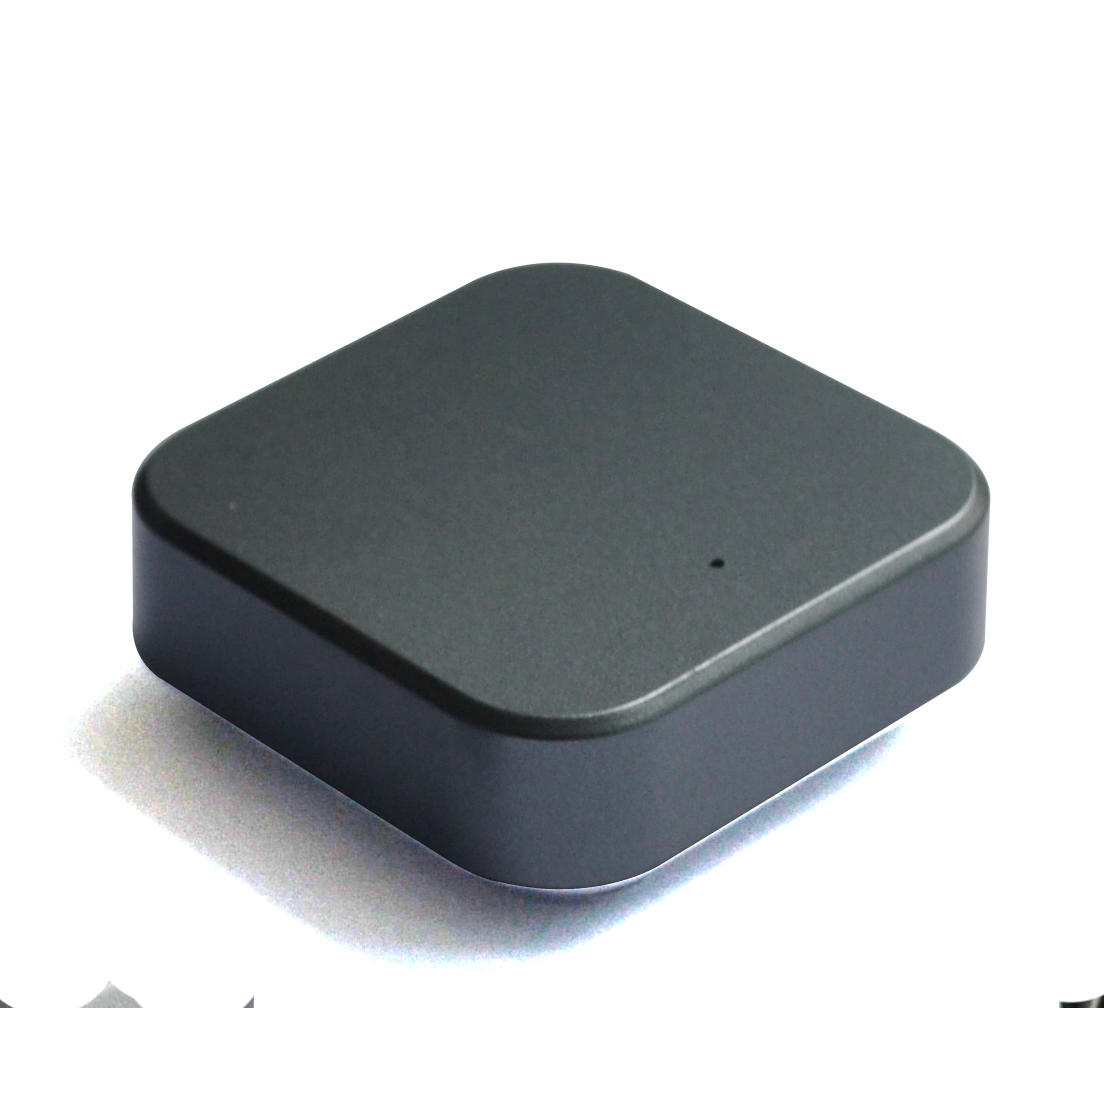 多微达尔2.4GHz无线人体感应开关门碰感应器衣柜橱柜智能开关手扫控制器